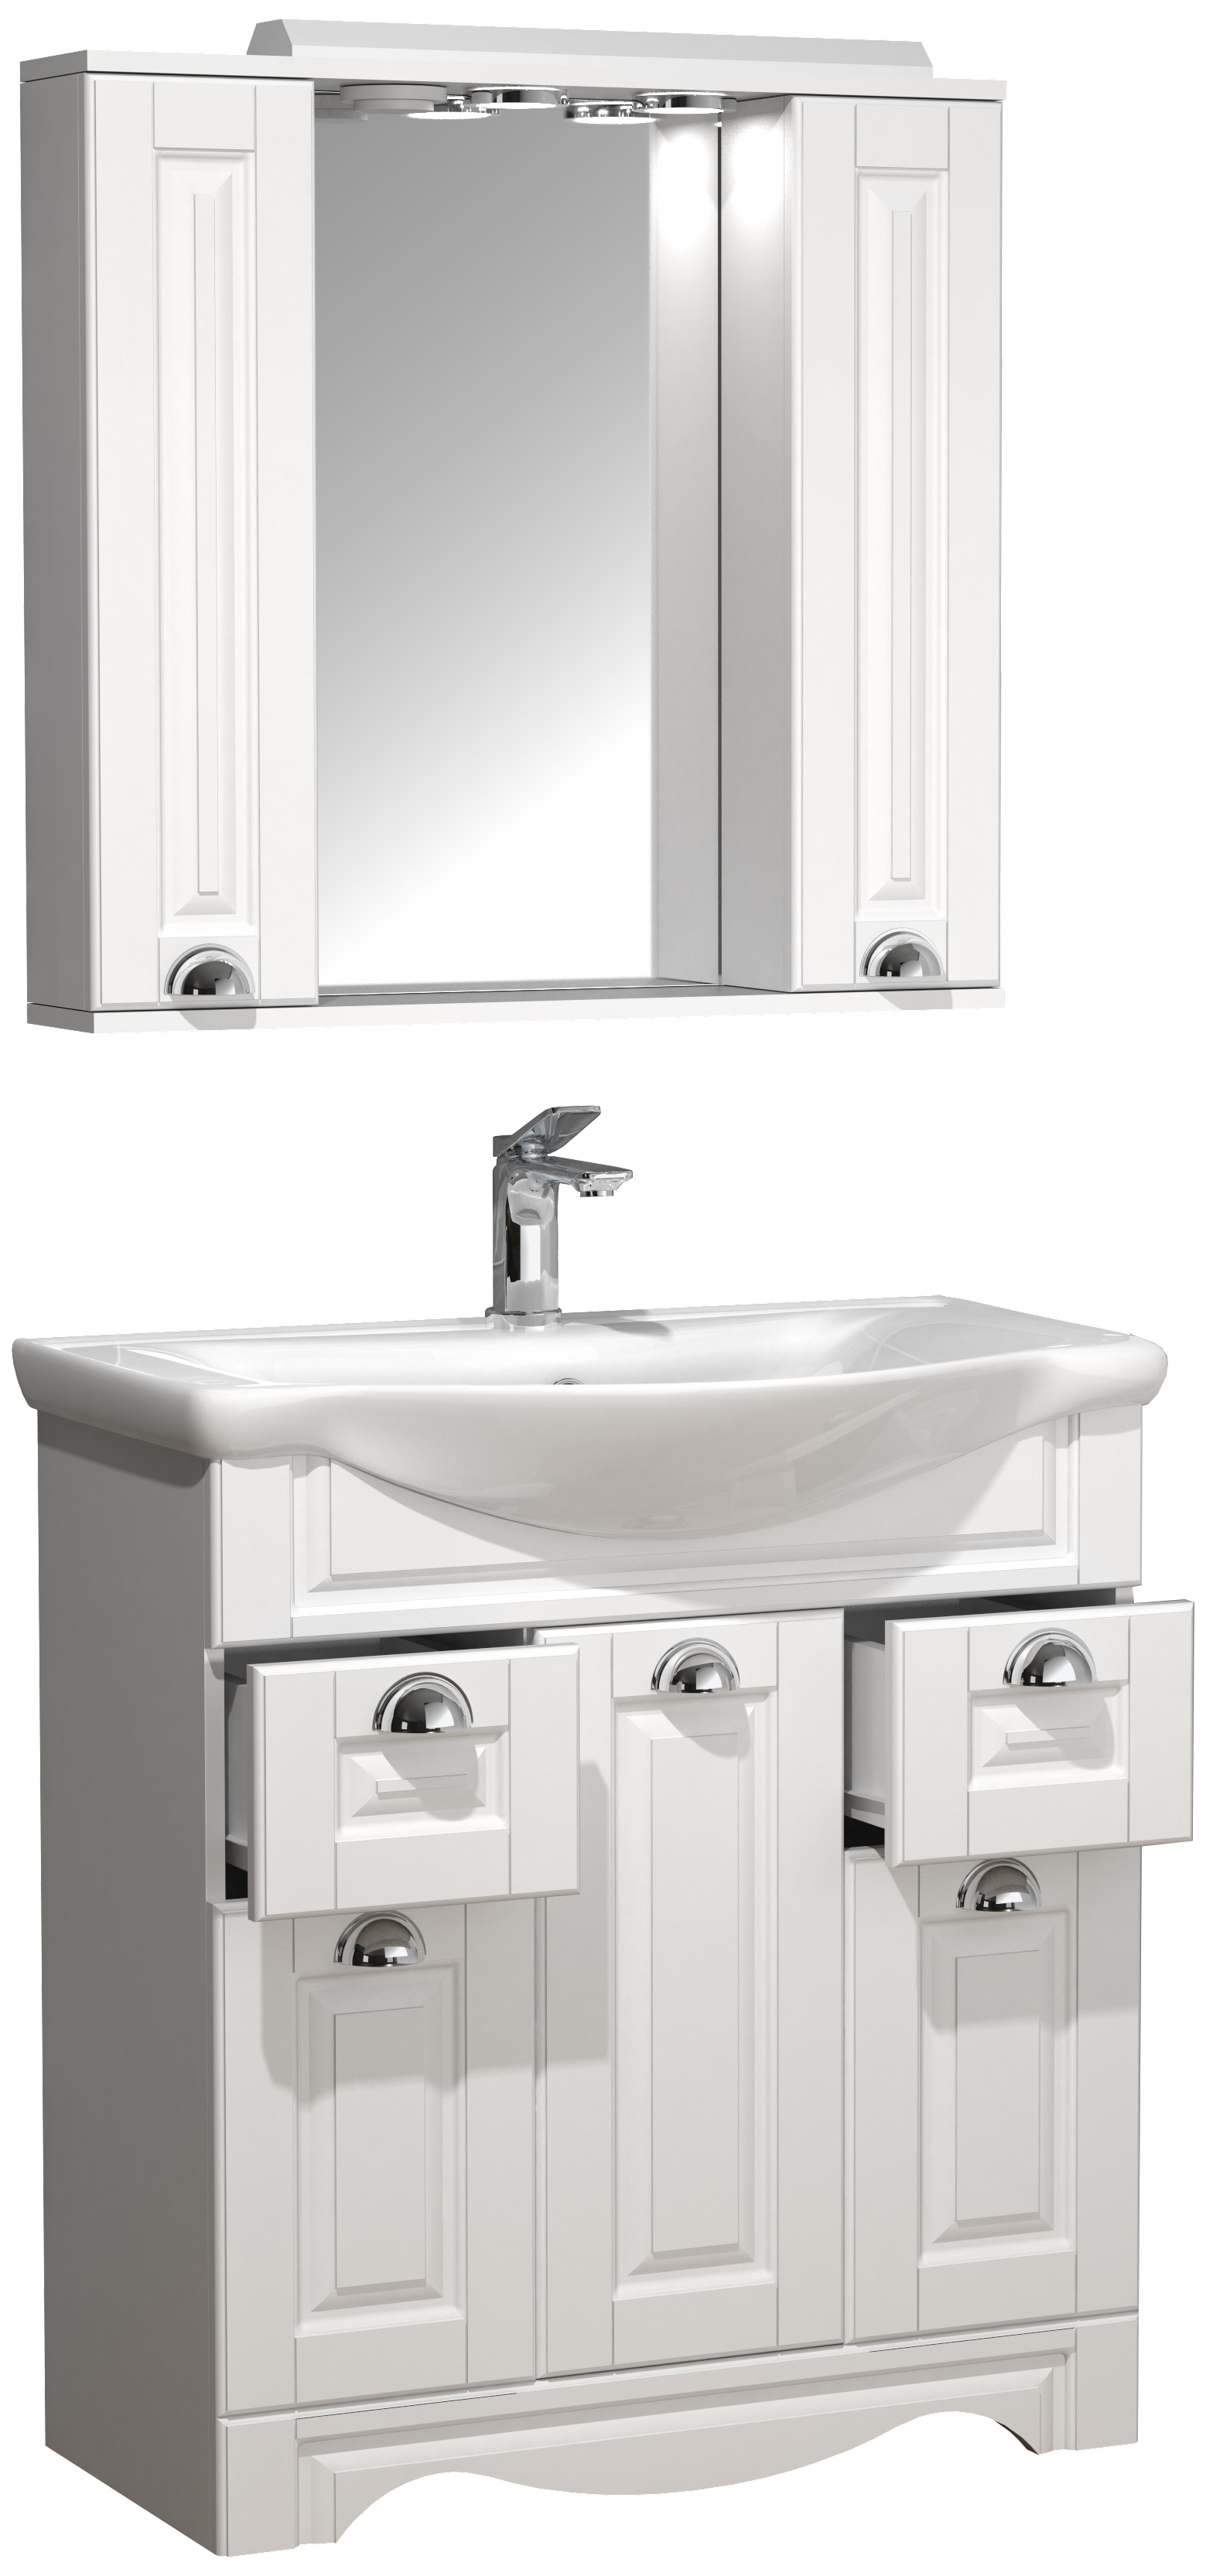 Billede af VCM NORDIC Casalo XL 3-delt vaskeplads, m. spejlskab, håndvask, 5 låger, 2 skuffer - hvid melamin